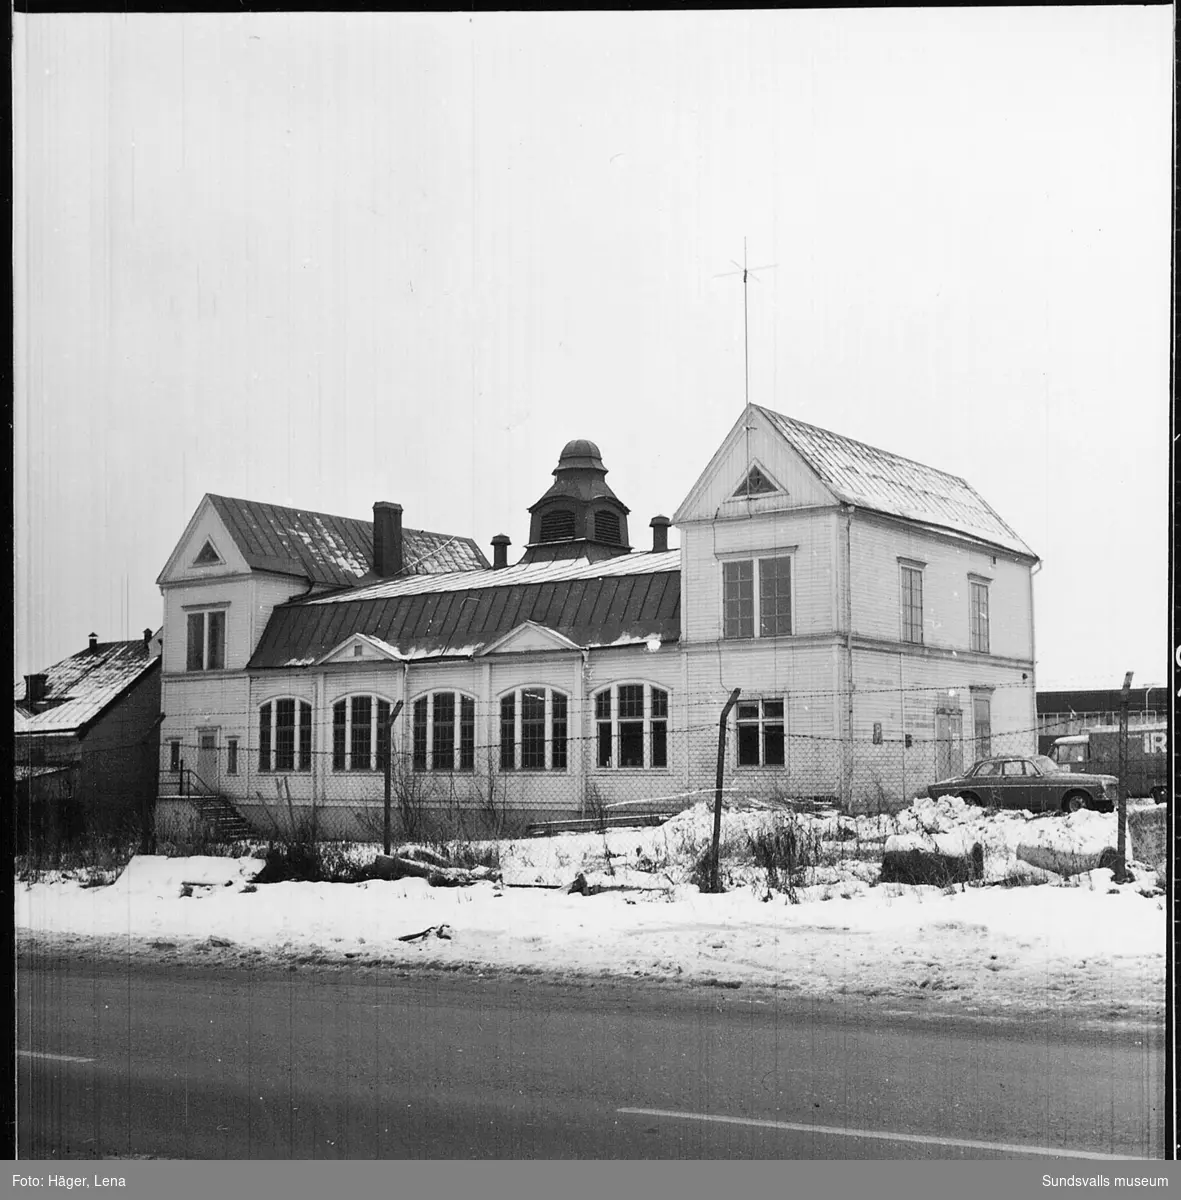 Fotodokumentation av Skönsbergs gamla Folkets hus före rivningen 1986.
Byggnaden användes då som slöjdsal. Dokumentationen gjordes av dåvarande byggnadsantikvarie Lena Häger. I dokumentationen finns även interiörer.